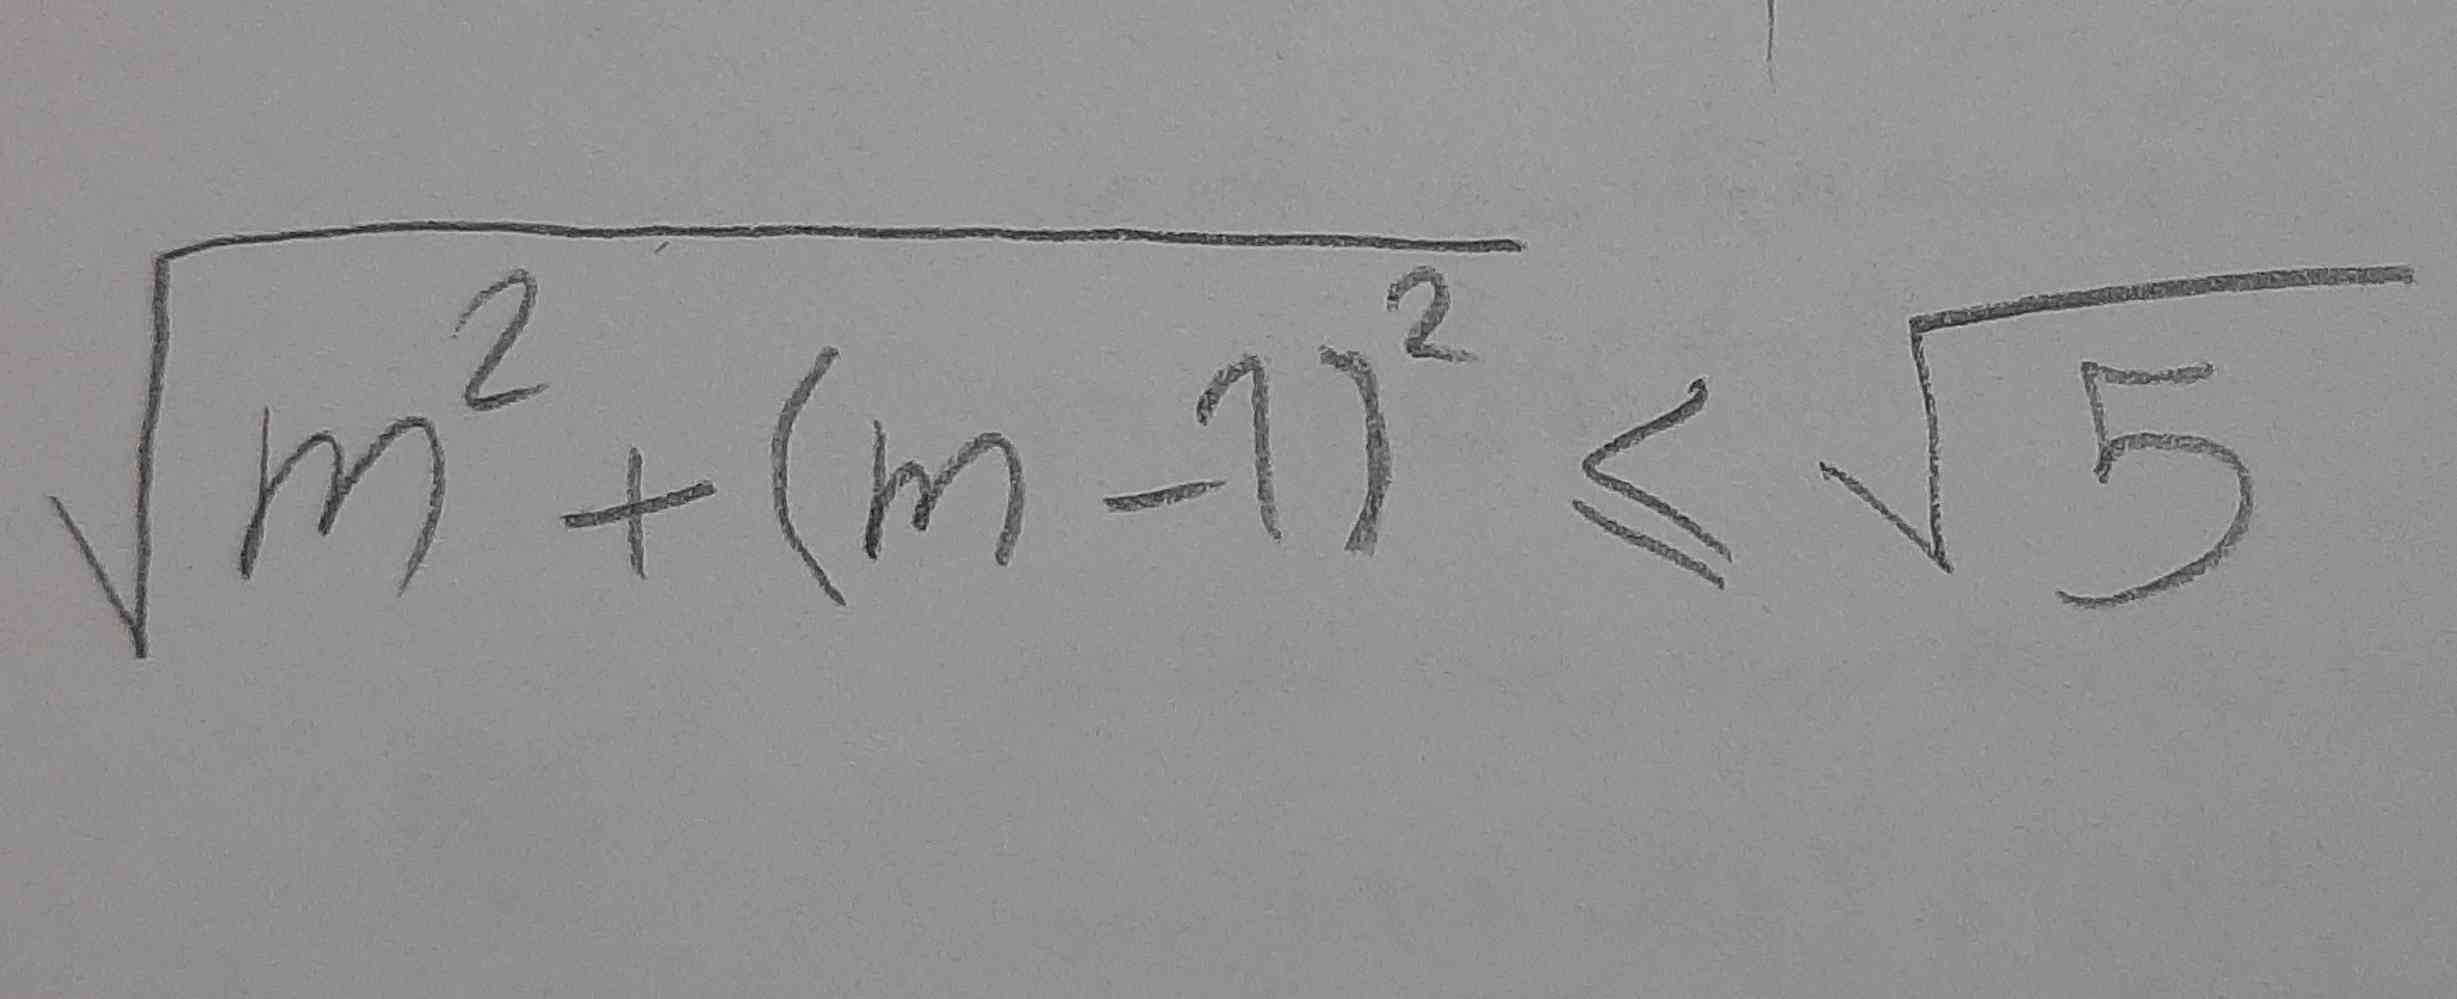 بچه ها میتونید حل این نا معادله رو کوتاه واسم توضیح بدین؟